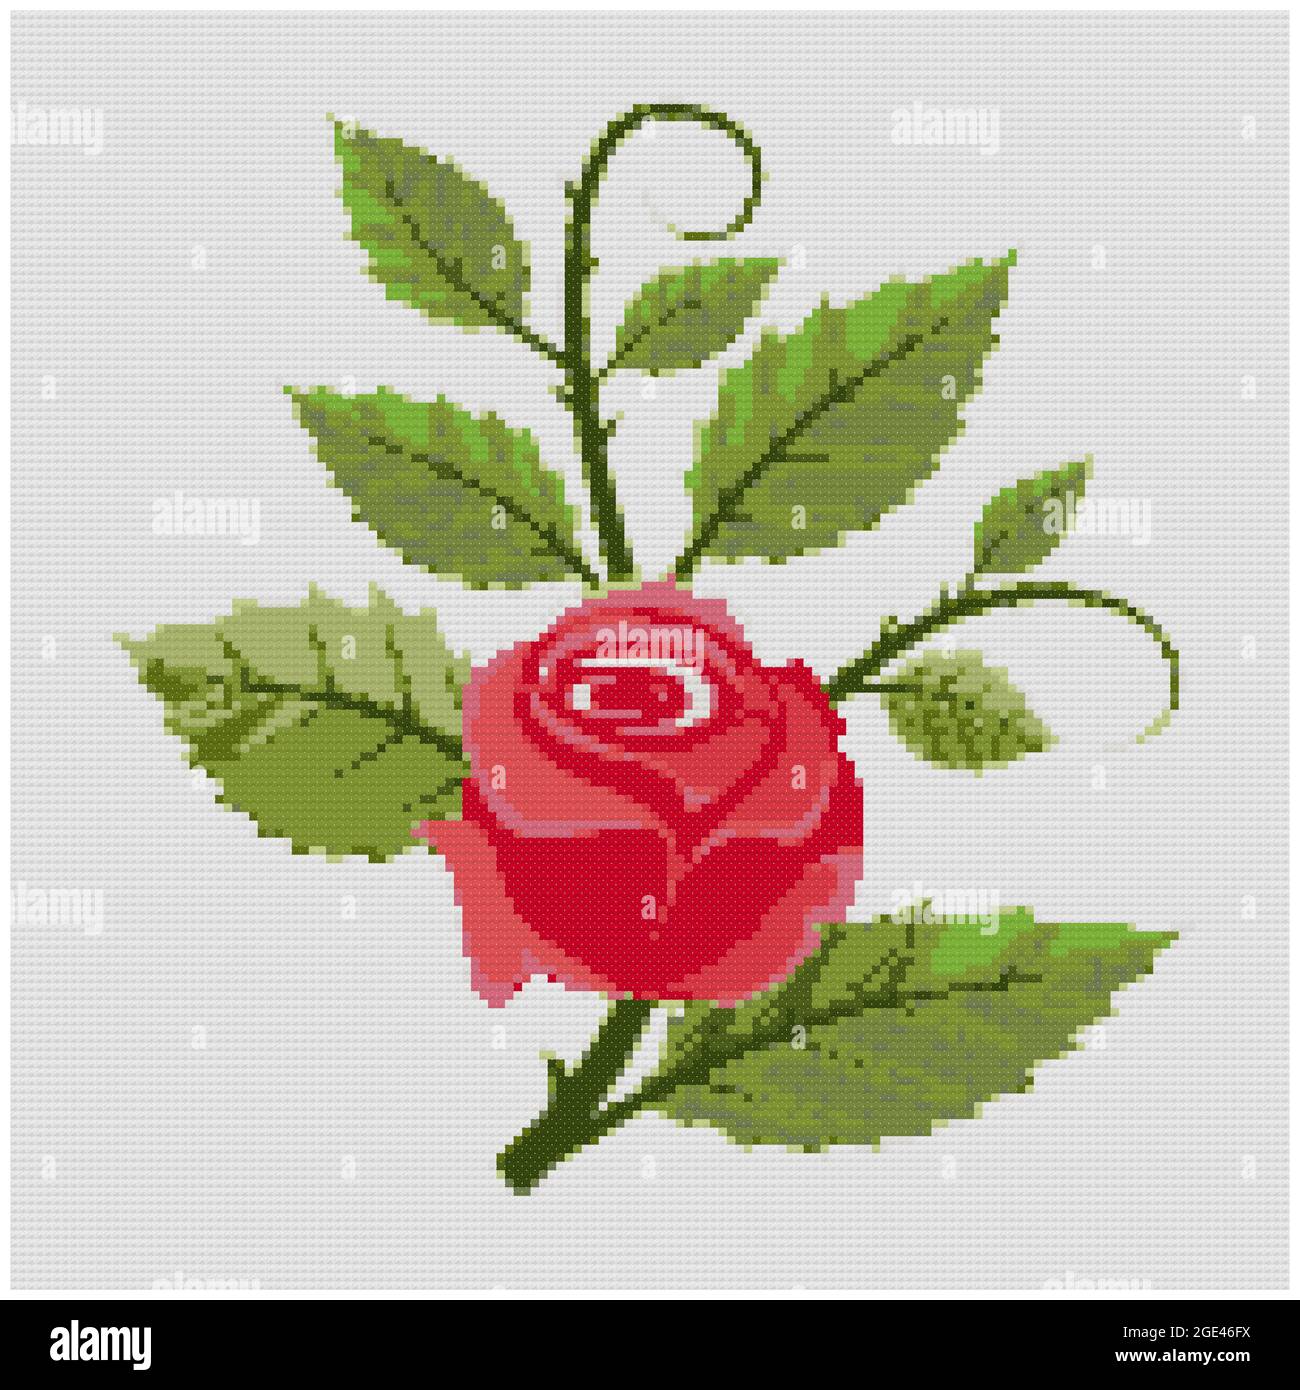 Flor de rosa roja y disposición de las hojas sobre fondo blanco.  Ilustración de bordado de punto de cruz. Imitación de la estructura de lona  tejida. Tela dic Fotografía de stock -